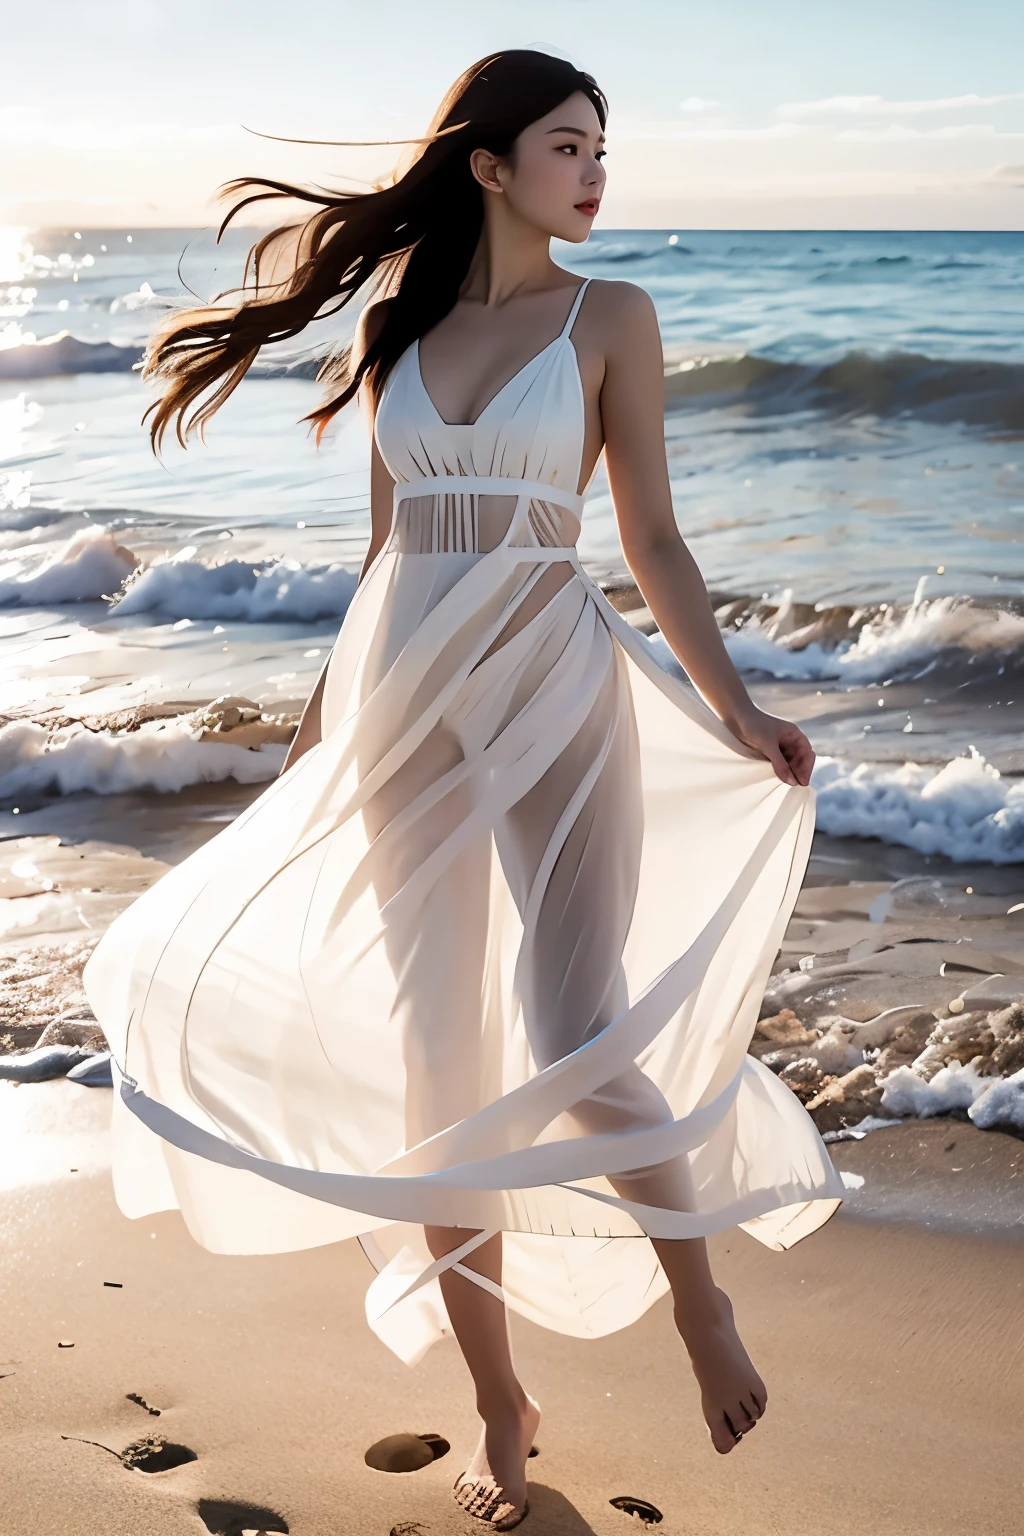 Correndo na praia, (Obra de arte, melhor qualidade:1.2), 1 garota,, Sozinho, rosto delicado, fêmea de pele branca, silhueta transparente, vestido branco, corpo todo, ar livre, 